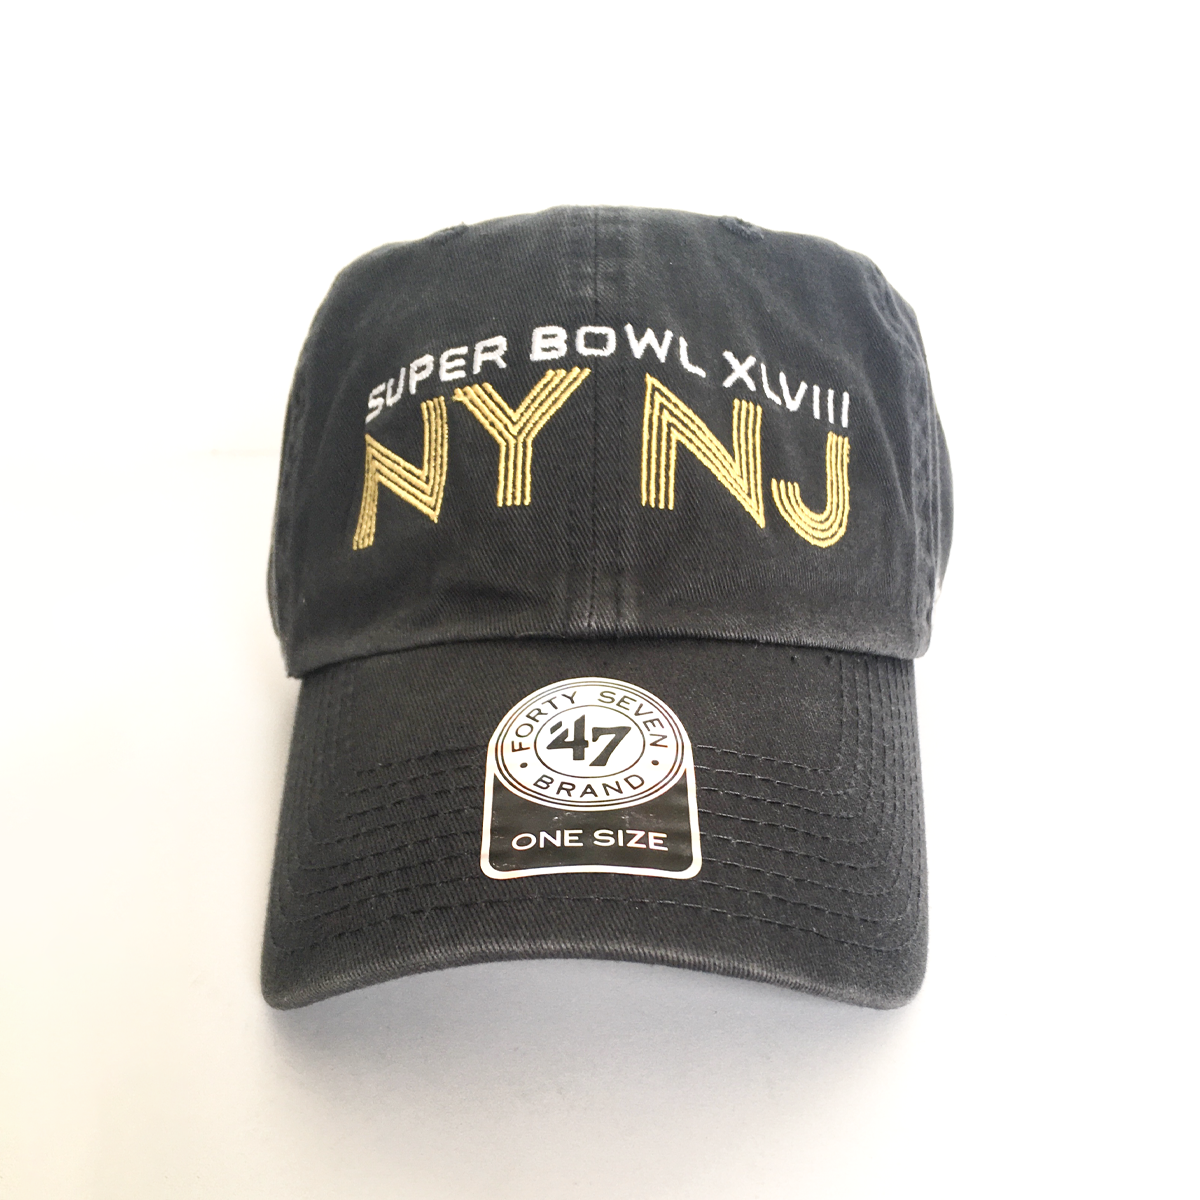 NY NJ 2014 Superbowl cap by 47